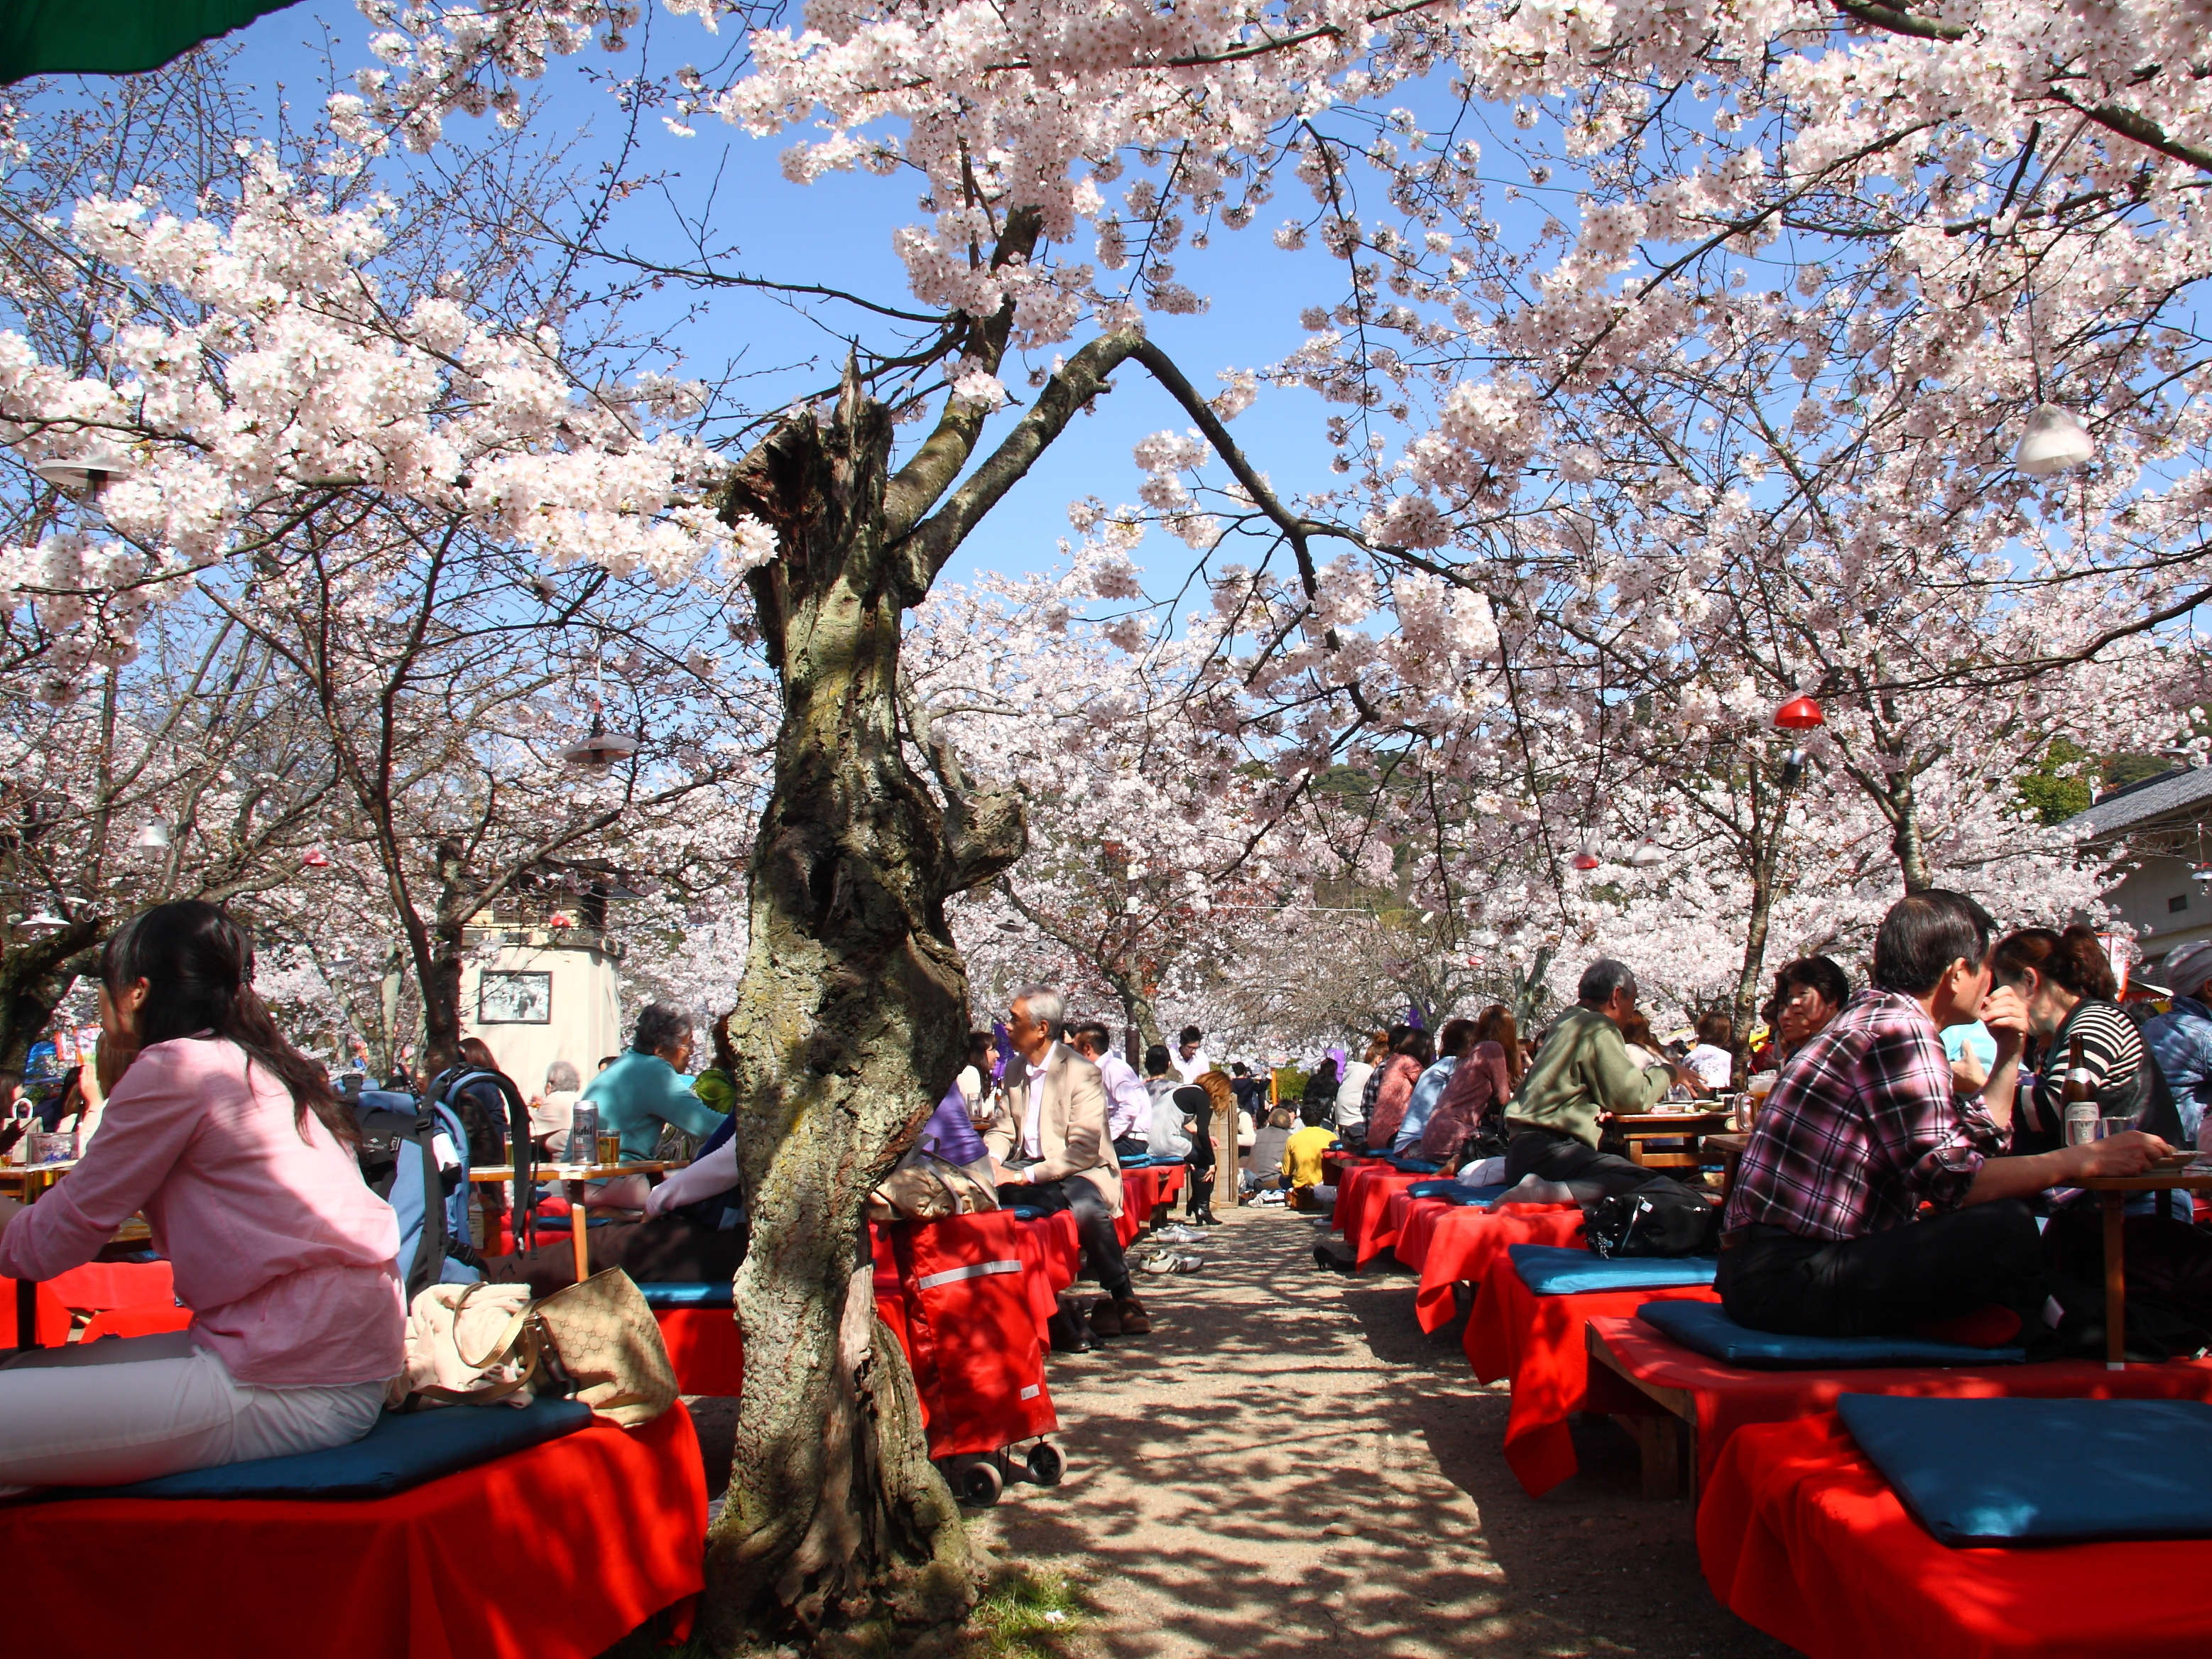 День цветущей сакуры. Праздник цветения вишни Сакуры в Японии. Ханами – любование сакурой в Японии. Фестиваль цветения Сакуры в Японии. Ханами праздник цветения Сакуры.